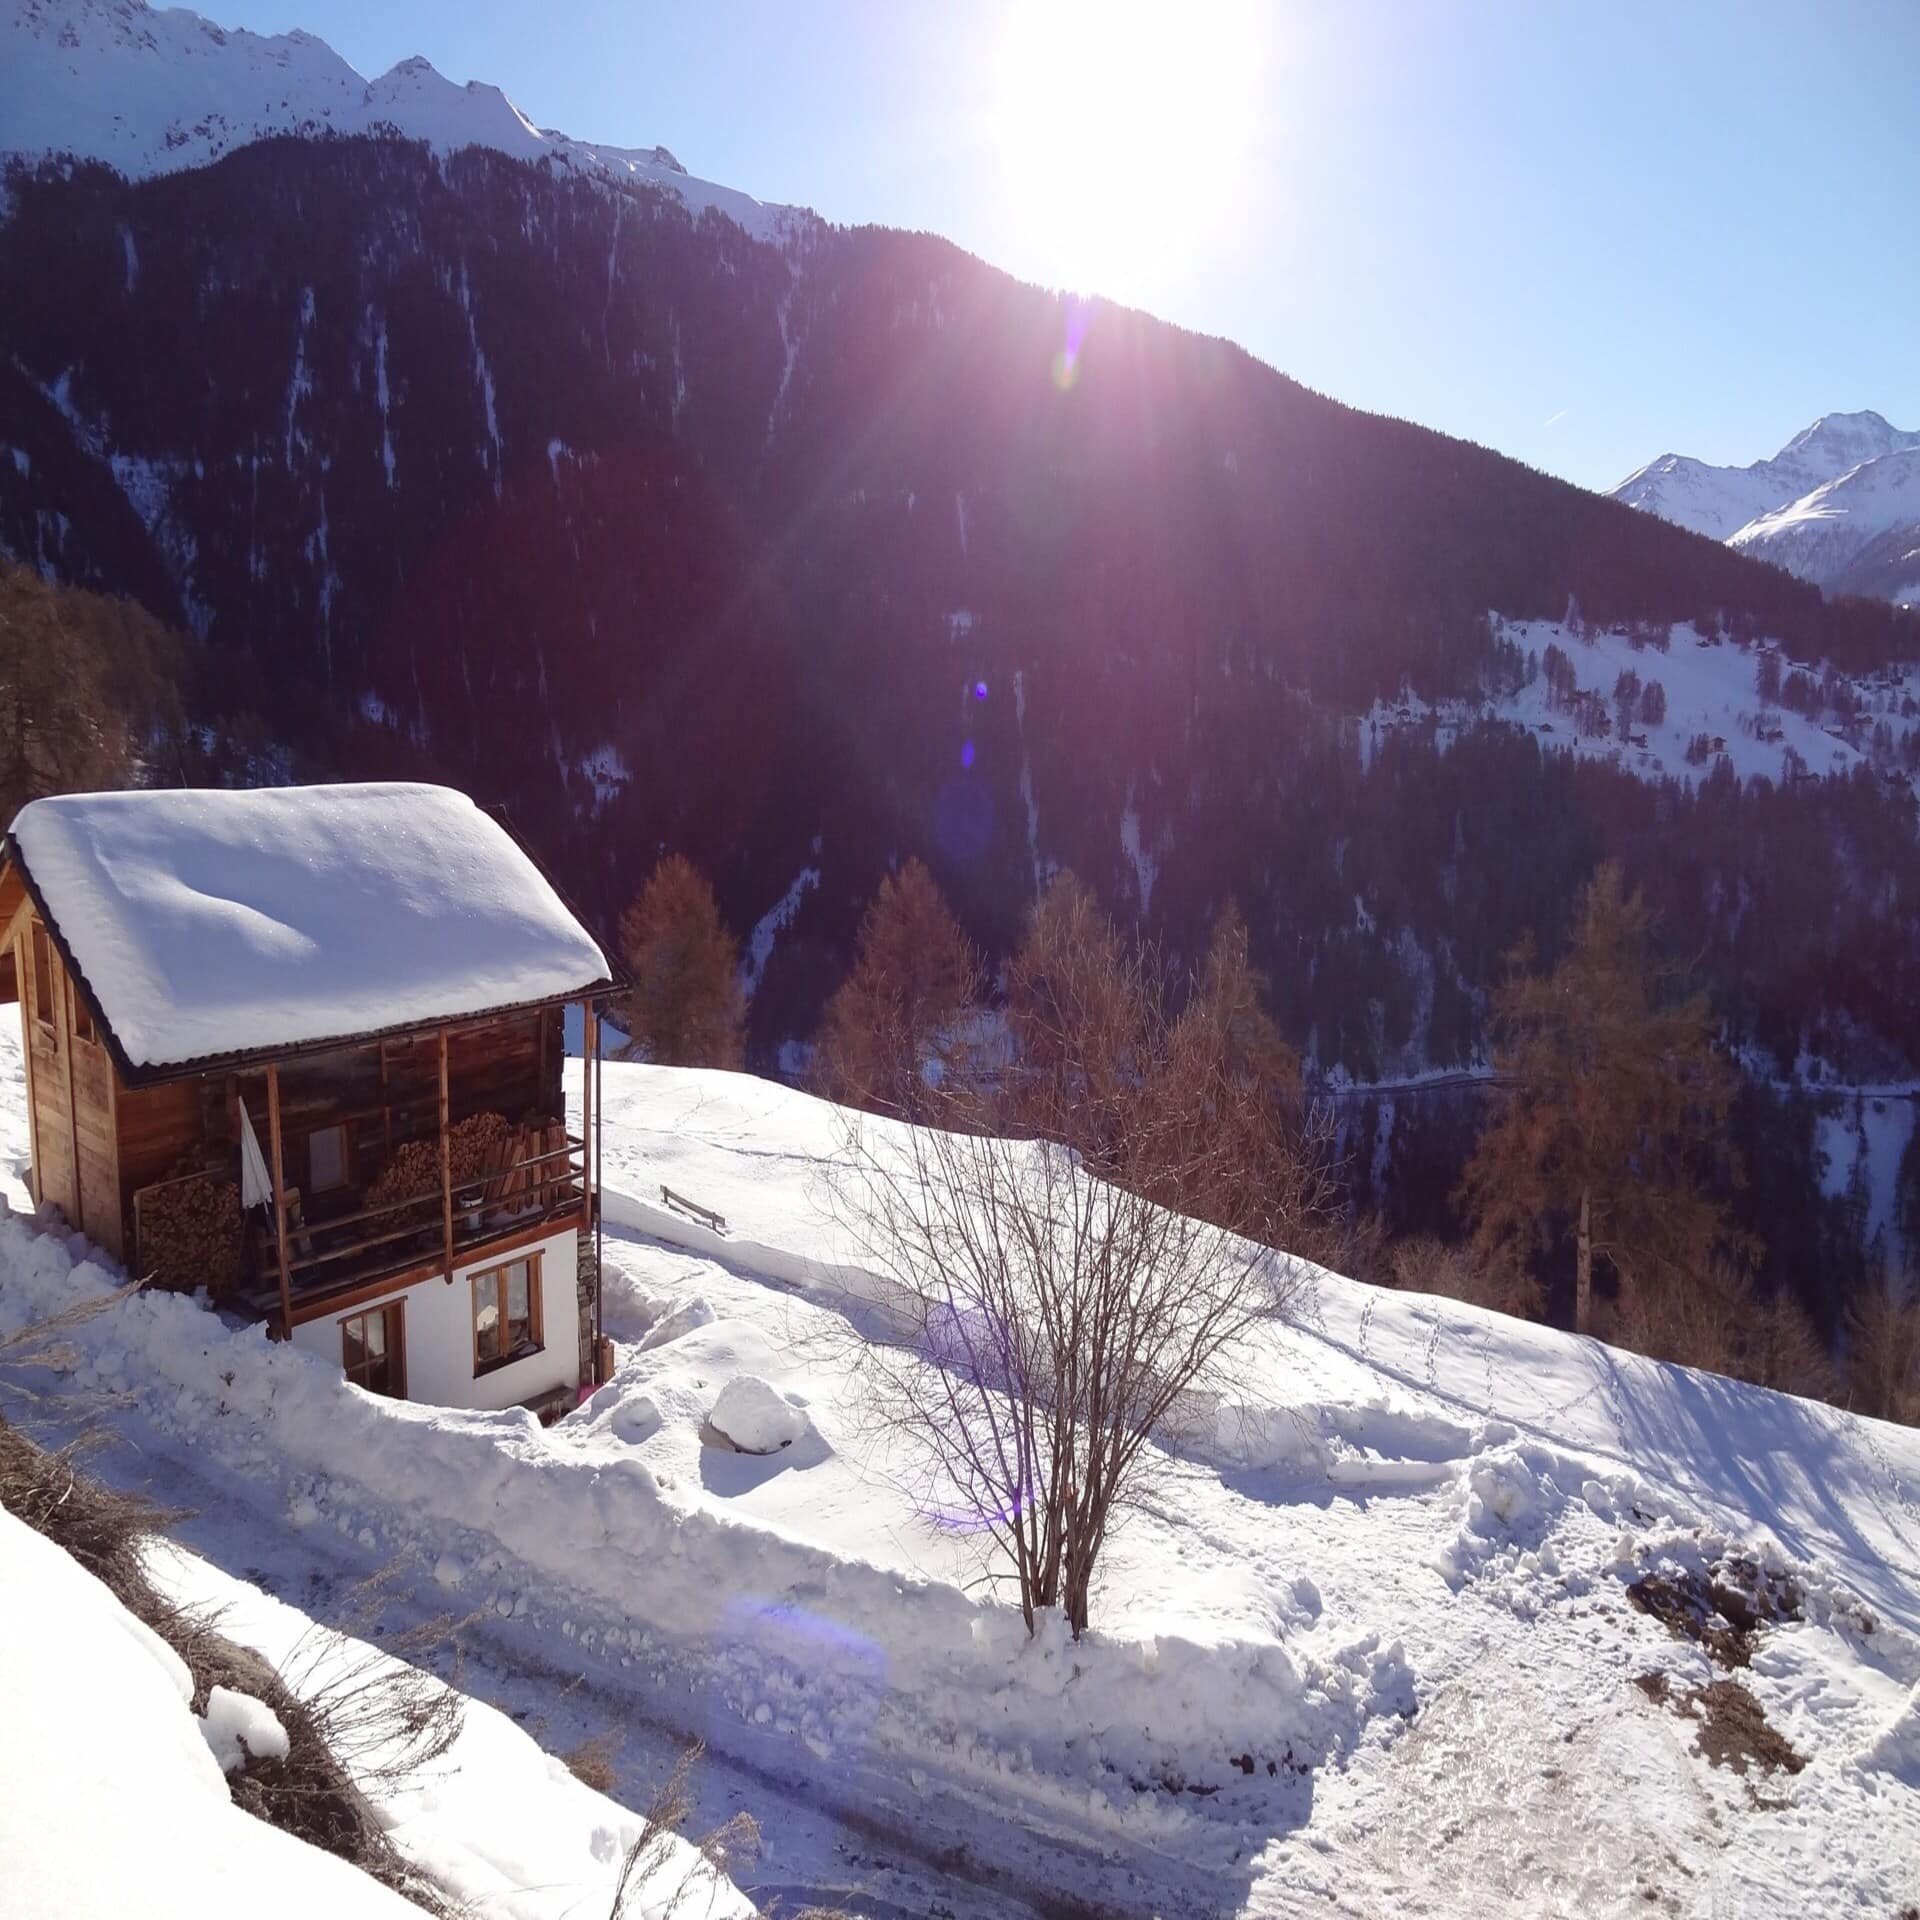 Kleines Chalet an einem verschneiten Berghang mit Panoramablick auf die Umgebung. Die Sonne scheint.